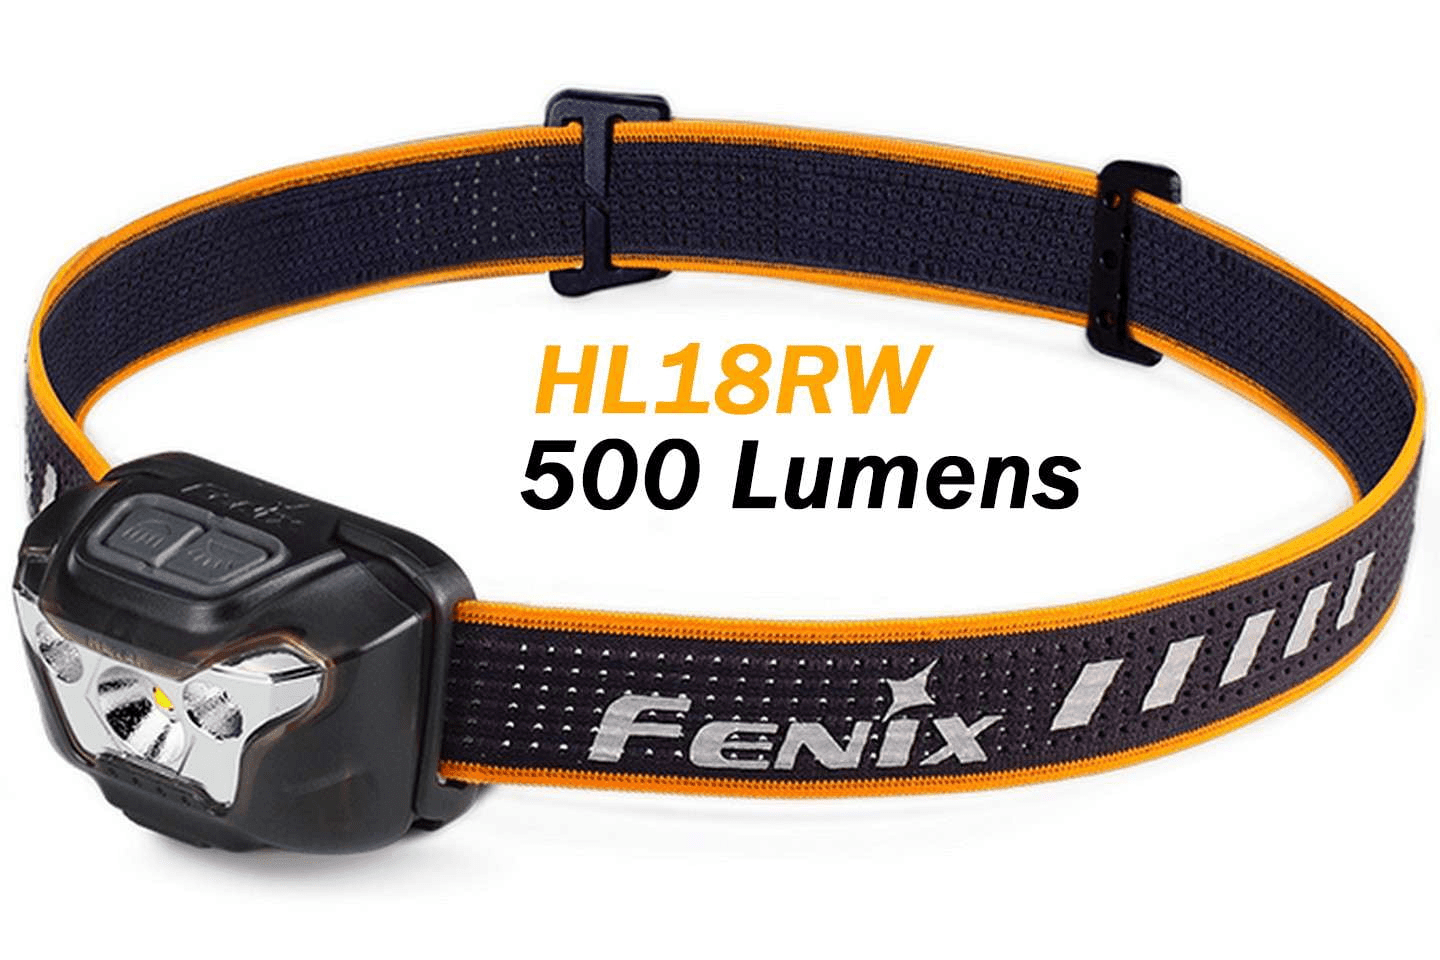 Fenix HL18RW - Lampe frontale dédiée au trail running - 500 lumens Site Officiel FENIX® - Votre boutique en ligne Fenix®